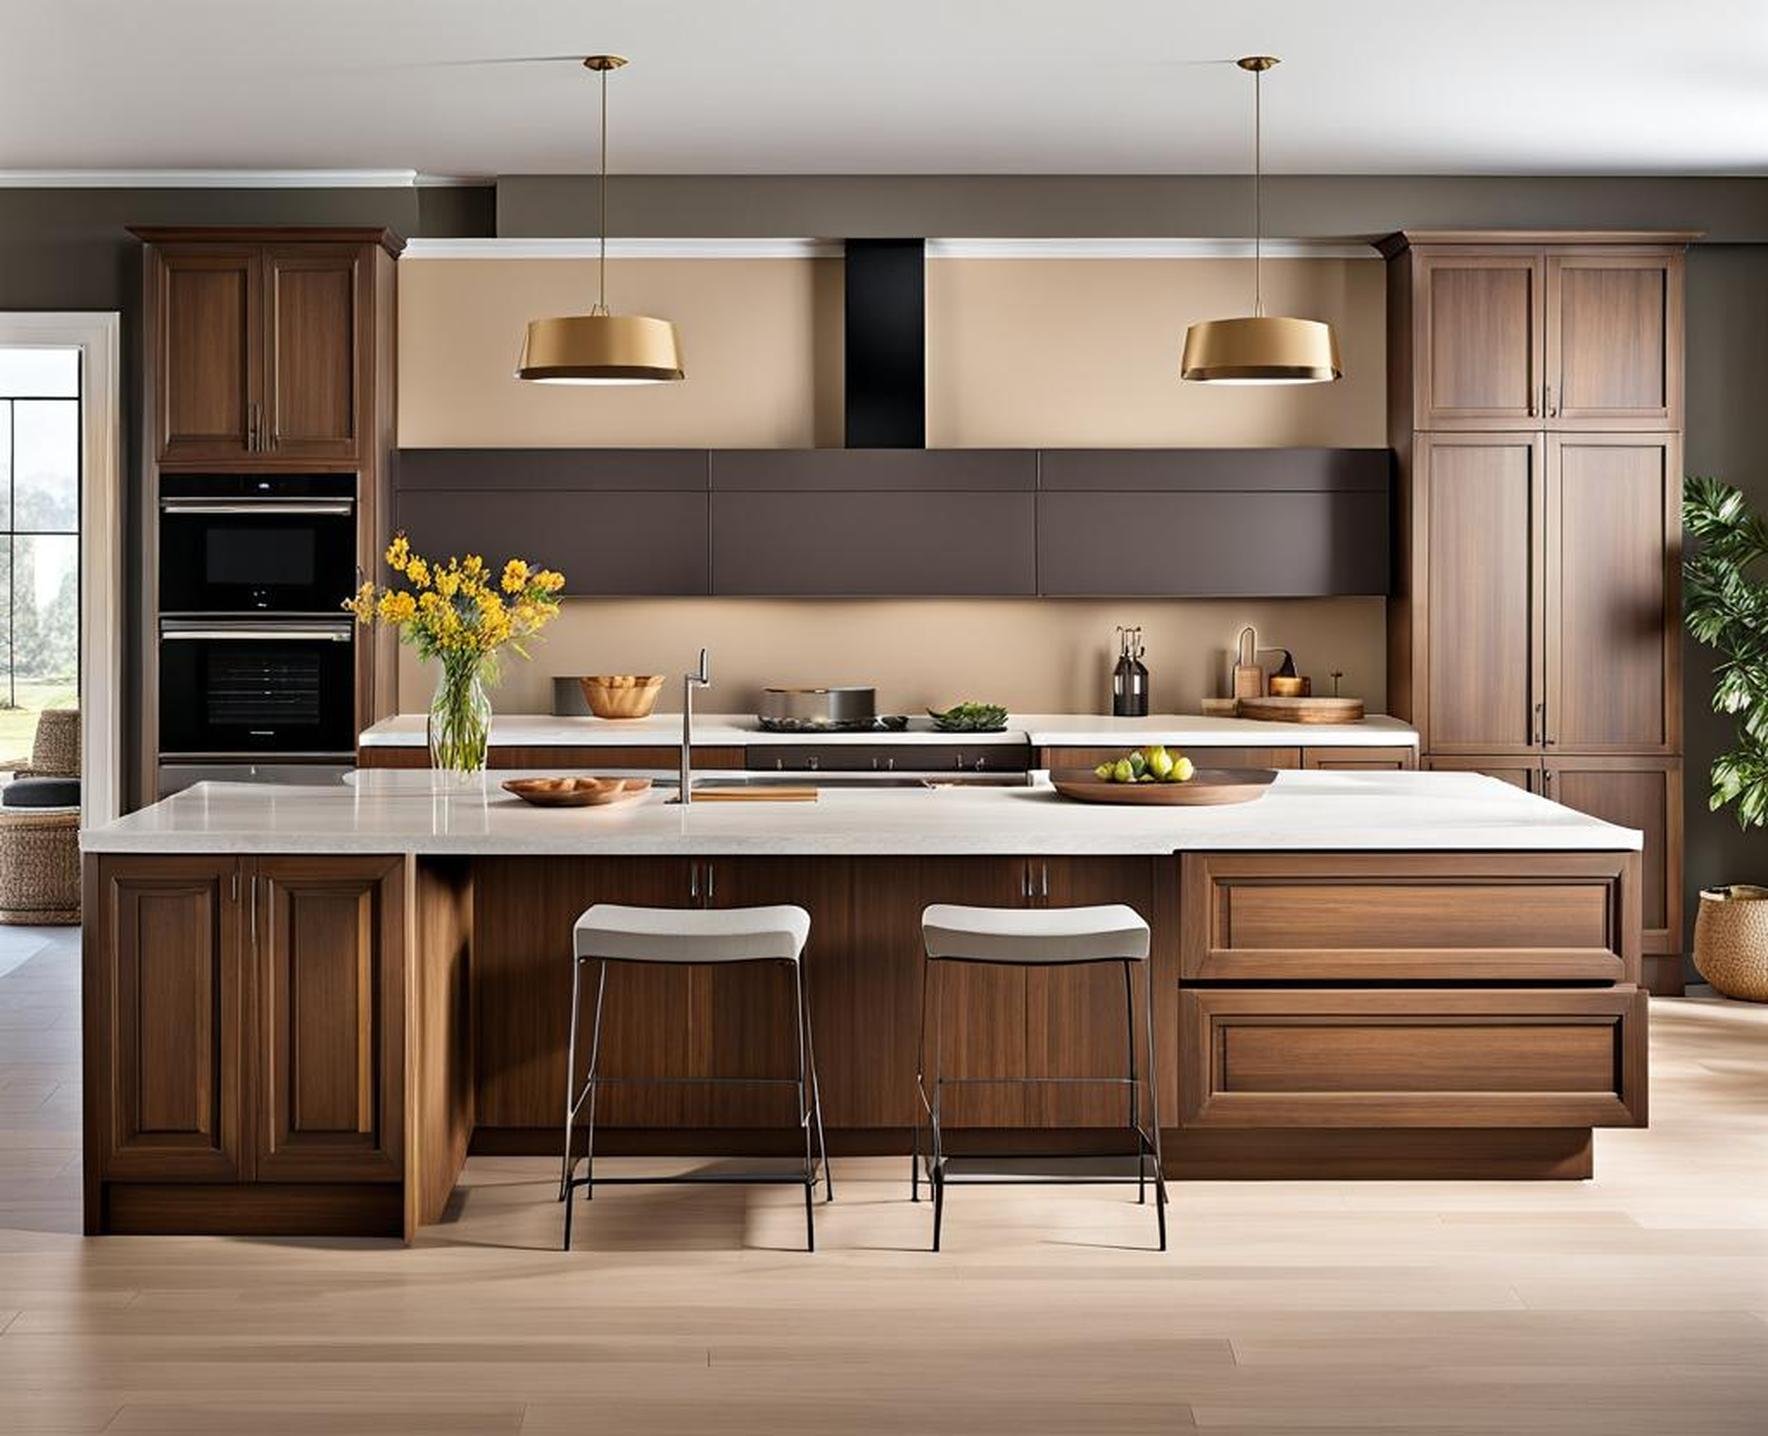 neutral kitchen cabinet colors